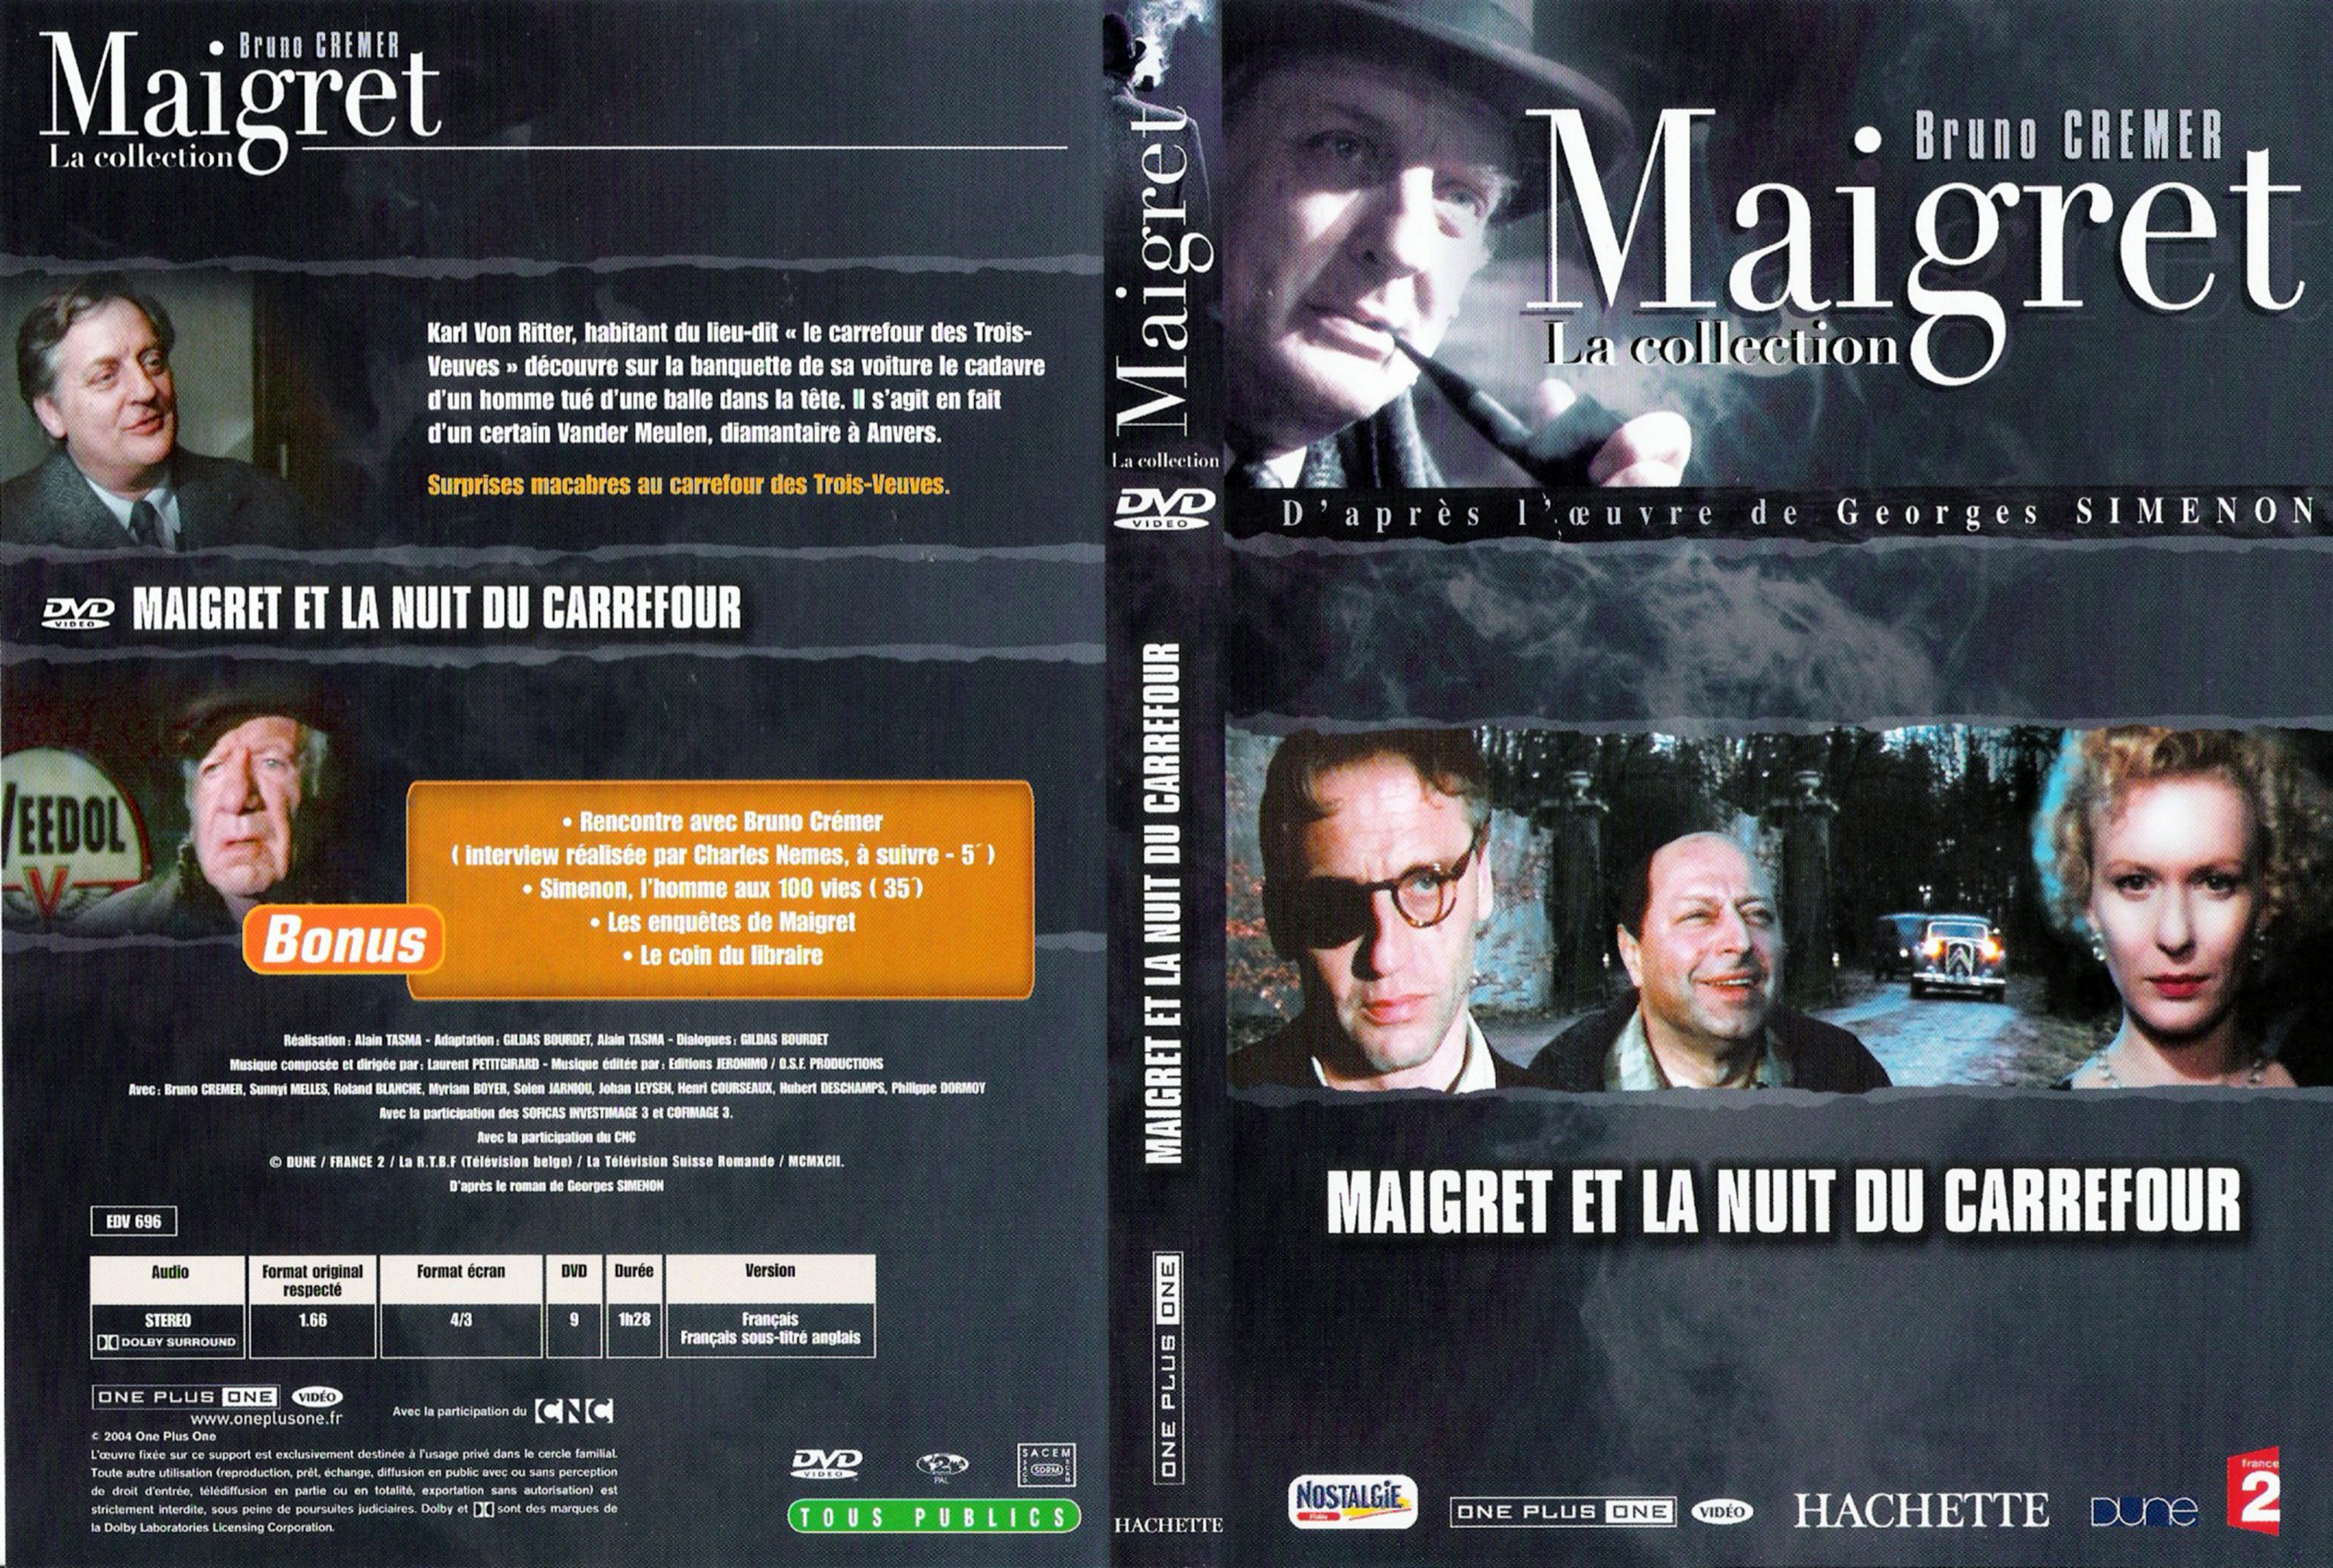 Jaquette DVD Maigret et la nuit du carrefour (Bruno Cremer)